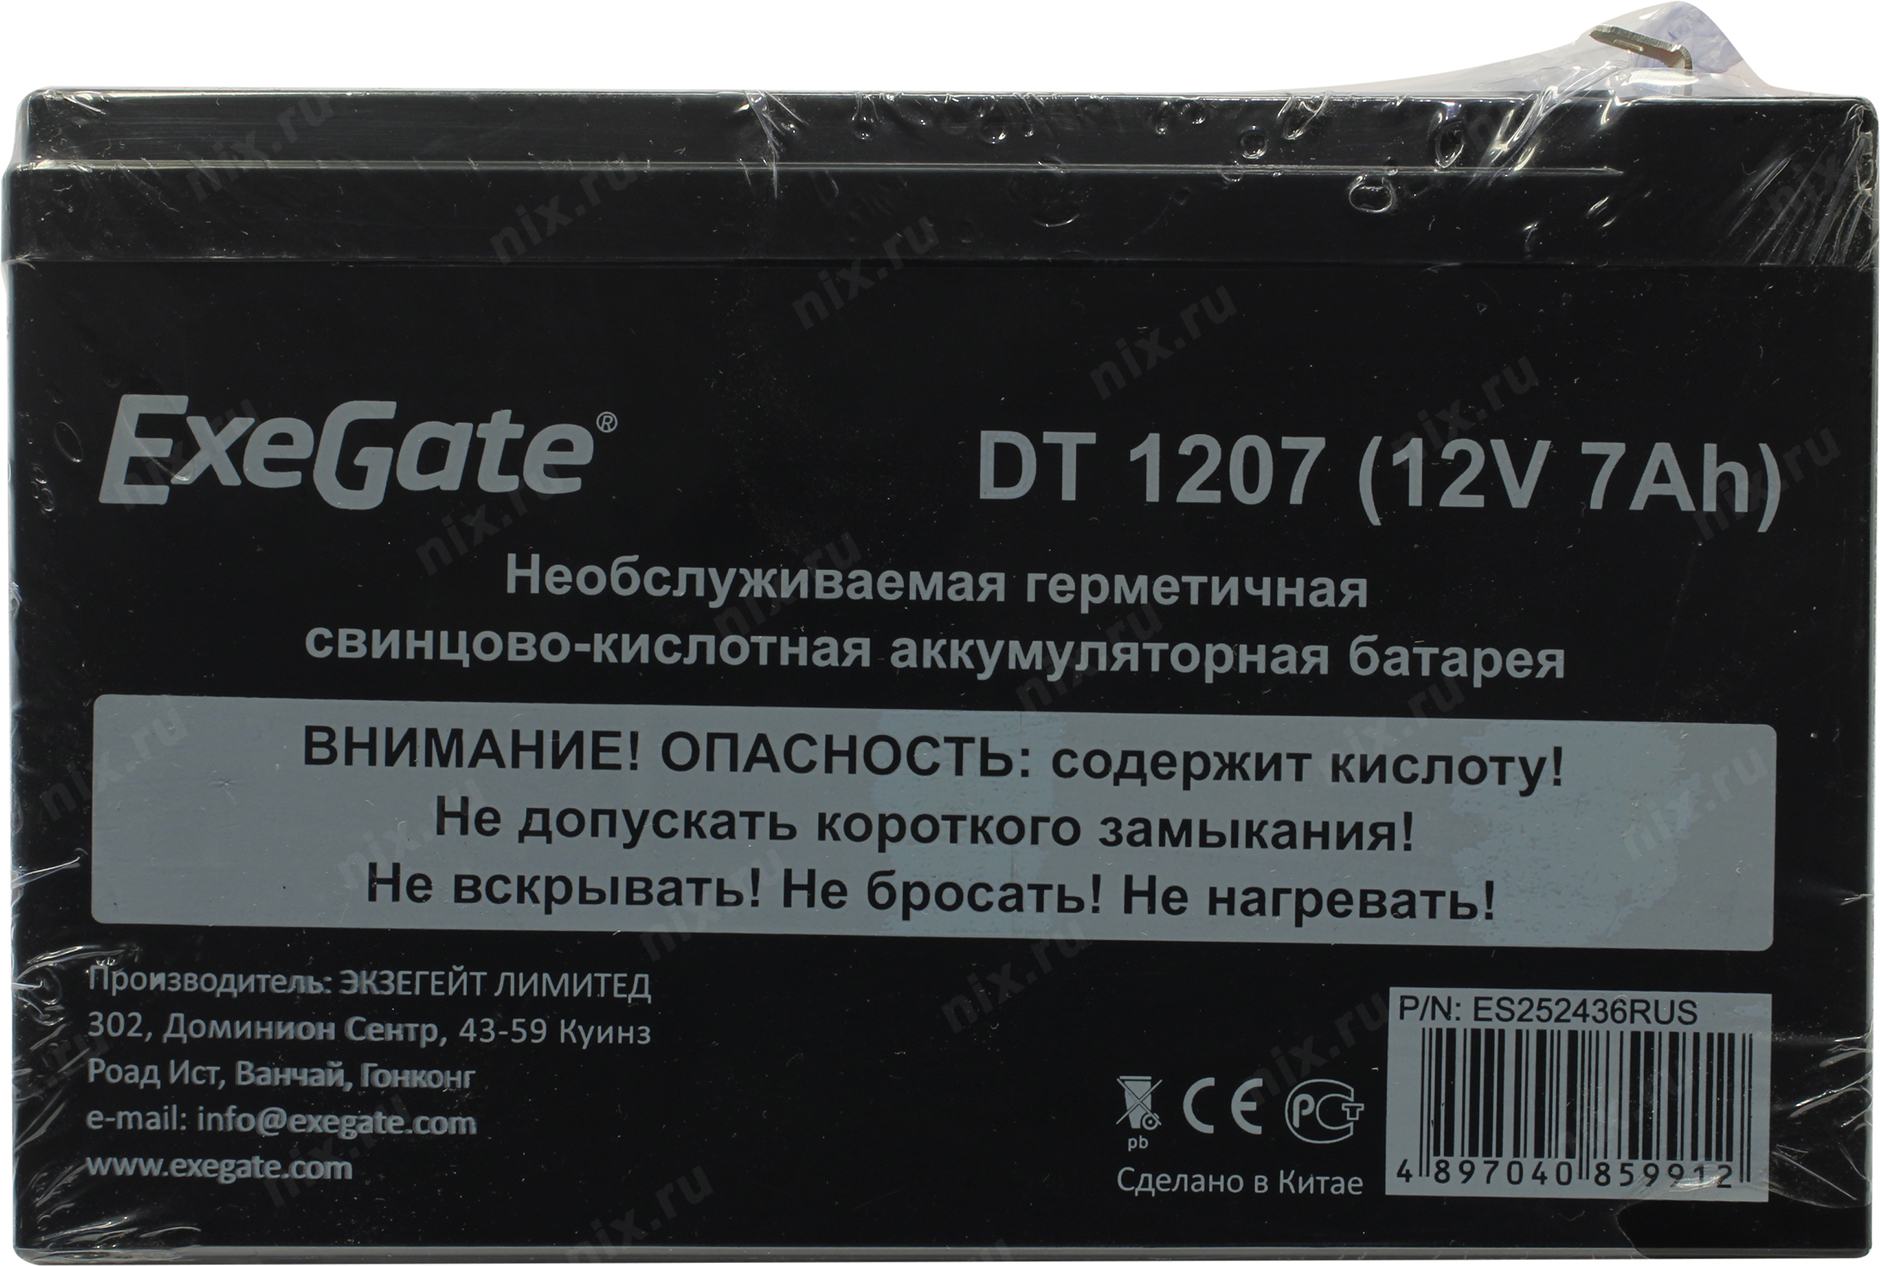 Exegate 12v. Батарея Exegate DT 1207/exs1270 (12v 7ah). Батарея аккумуляторная Exegate DTM 1207 (12v 7ah, клеммы f2). Батарея exs1290 Exegate Special. Аккумуляторная батарея Exegate DTM exs1205.